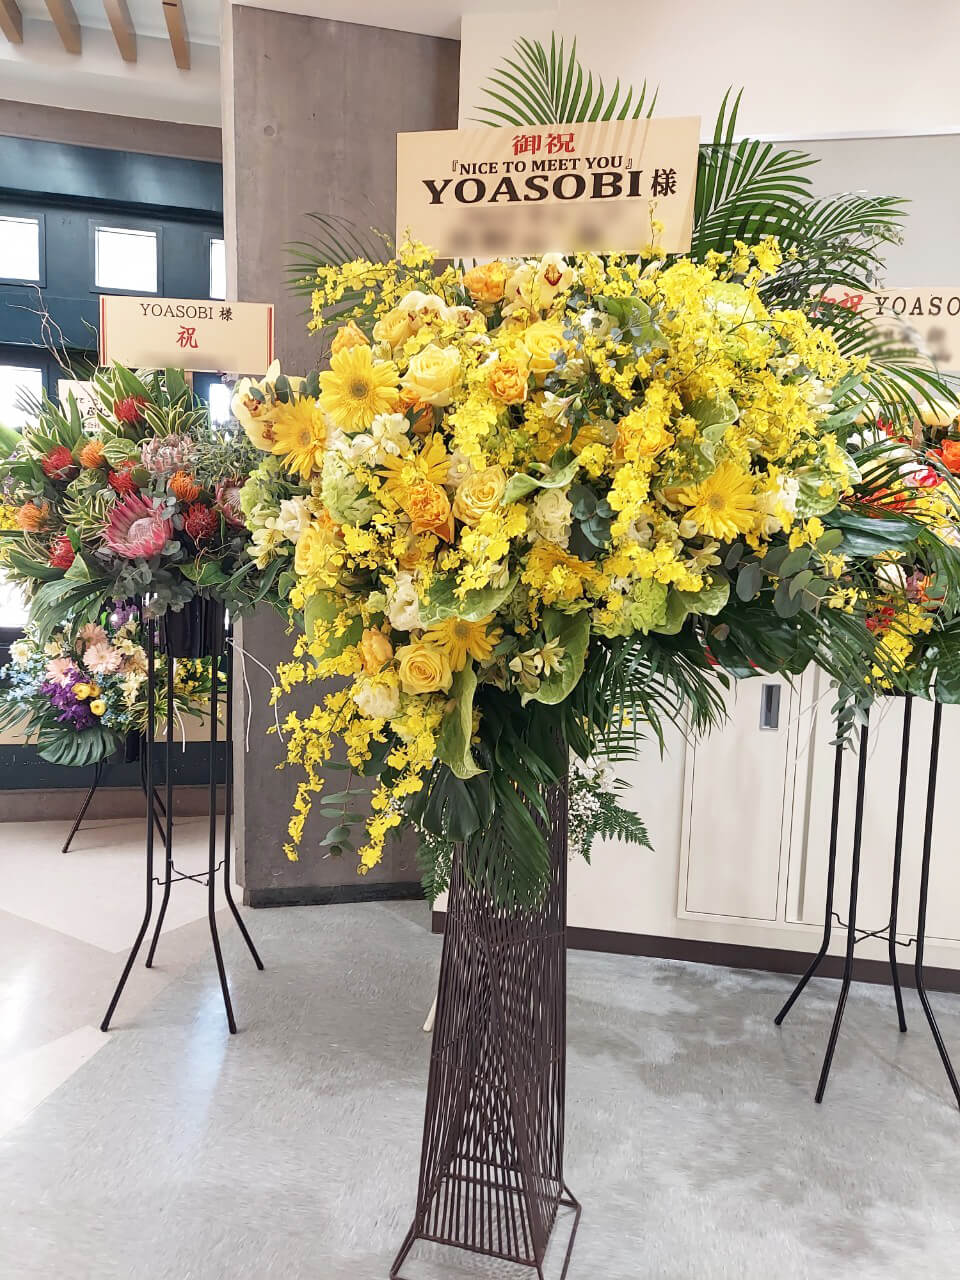 YOASOBI様のライブ公演祝いアイアンスタンド花 @日本武道館